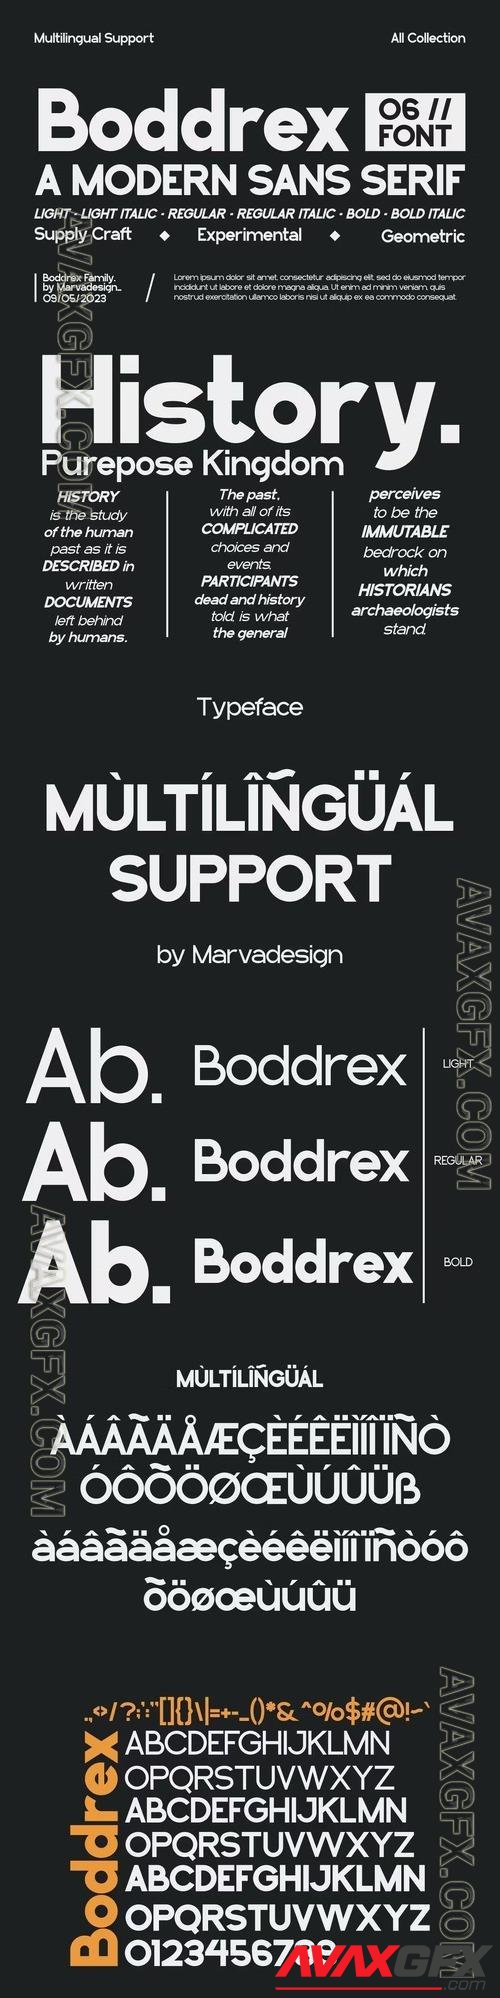 Boddrex - A Modern Sans Serif Font